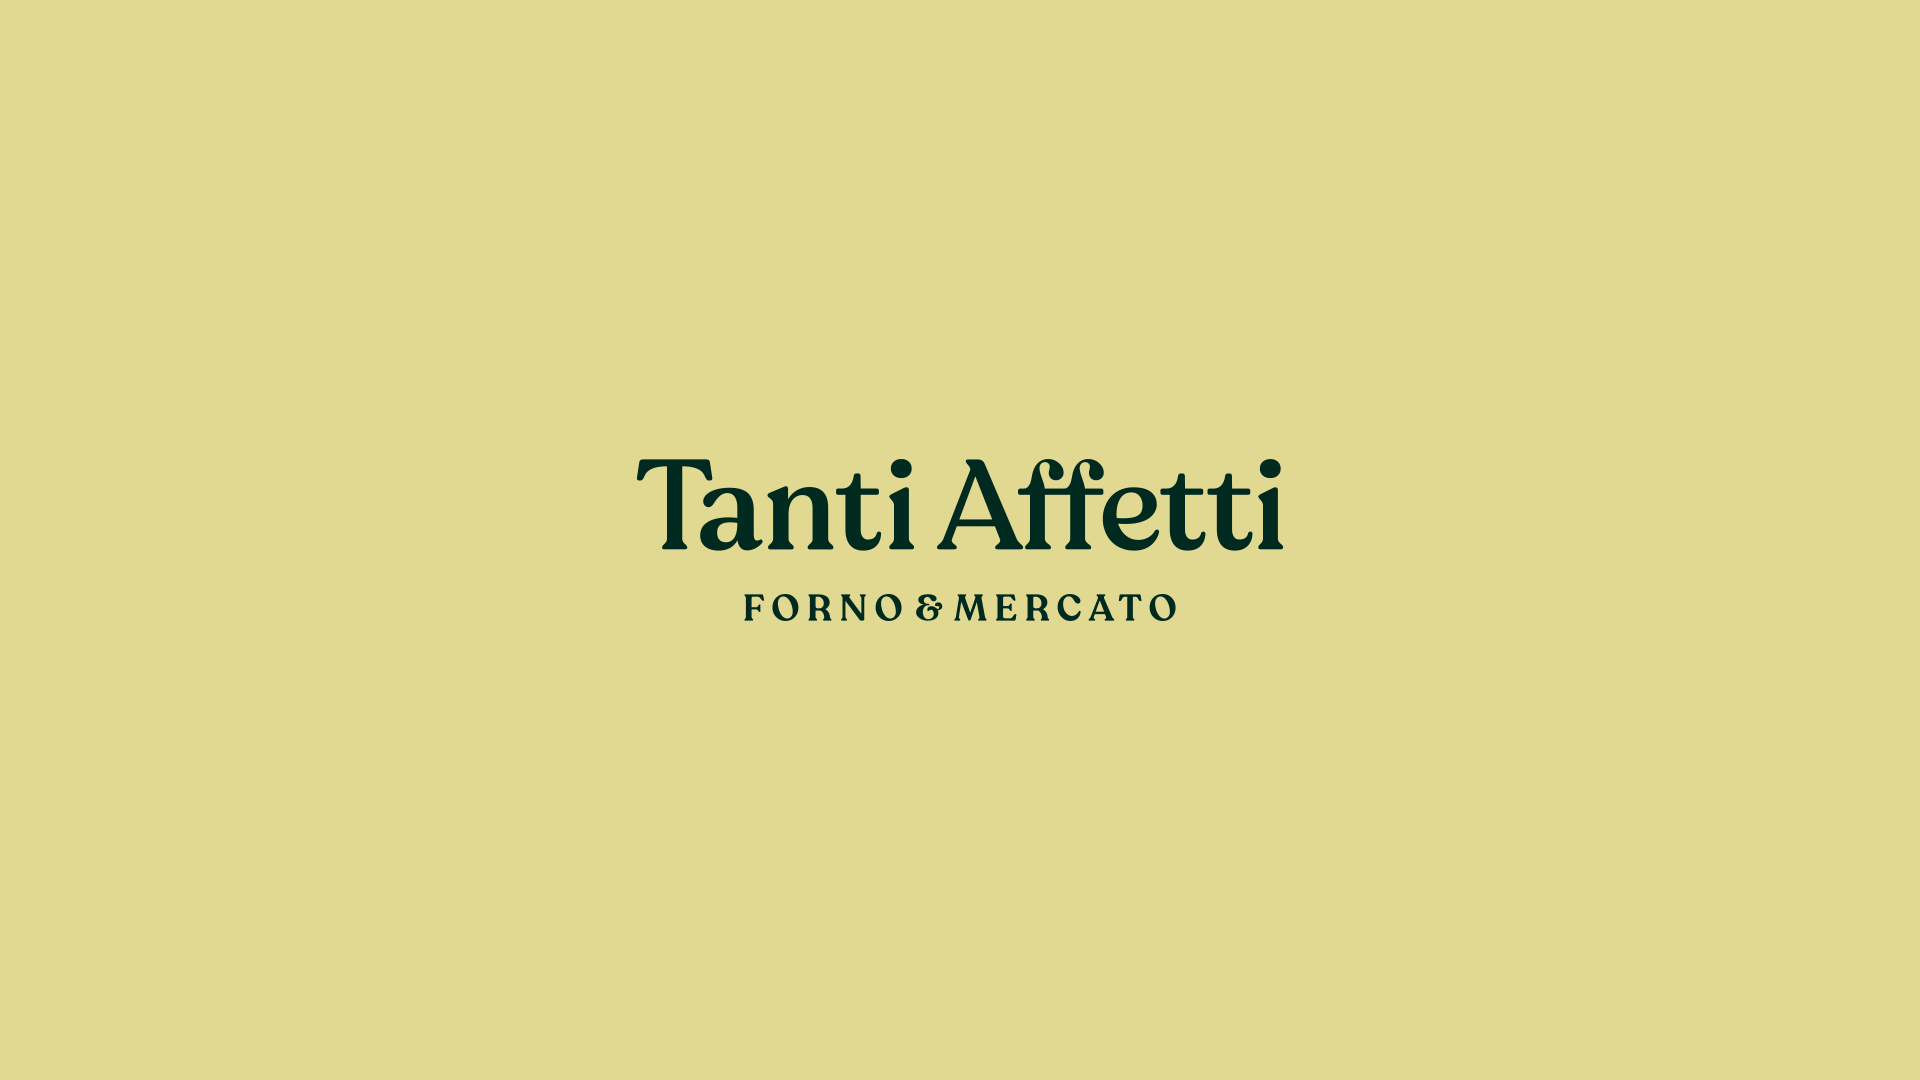 Tanti Affetti Branding and Collaterals - Ave Design